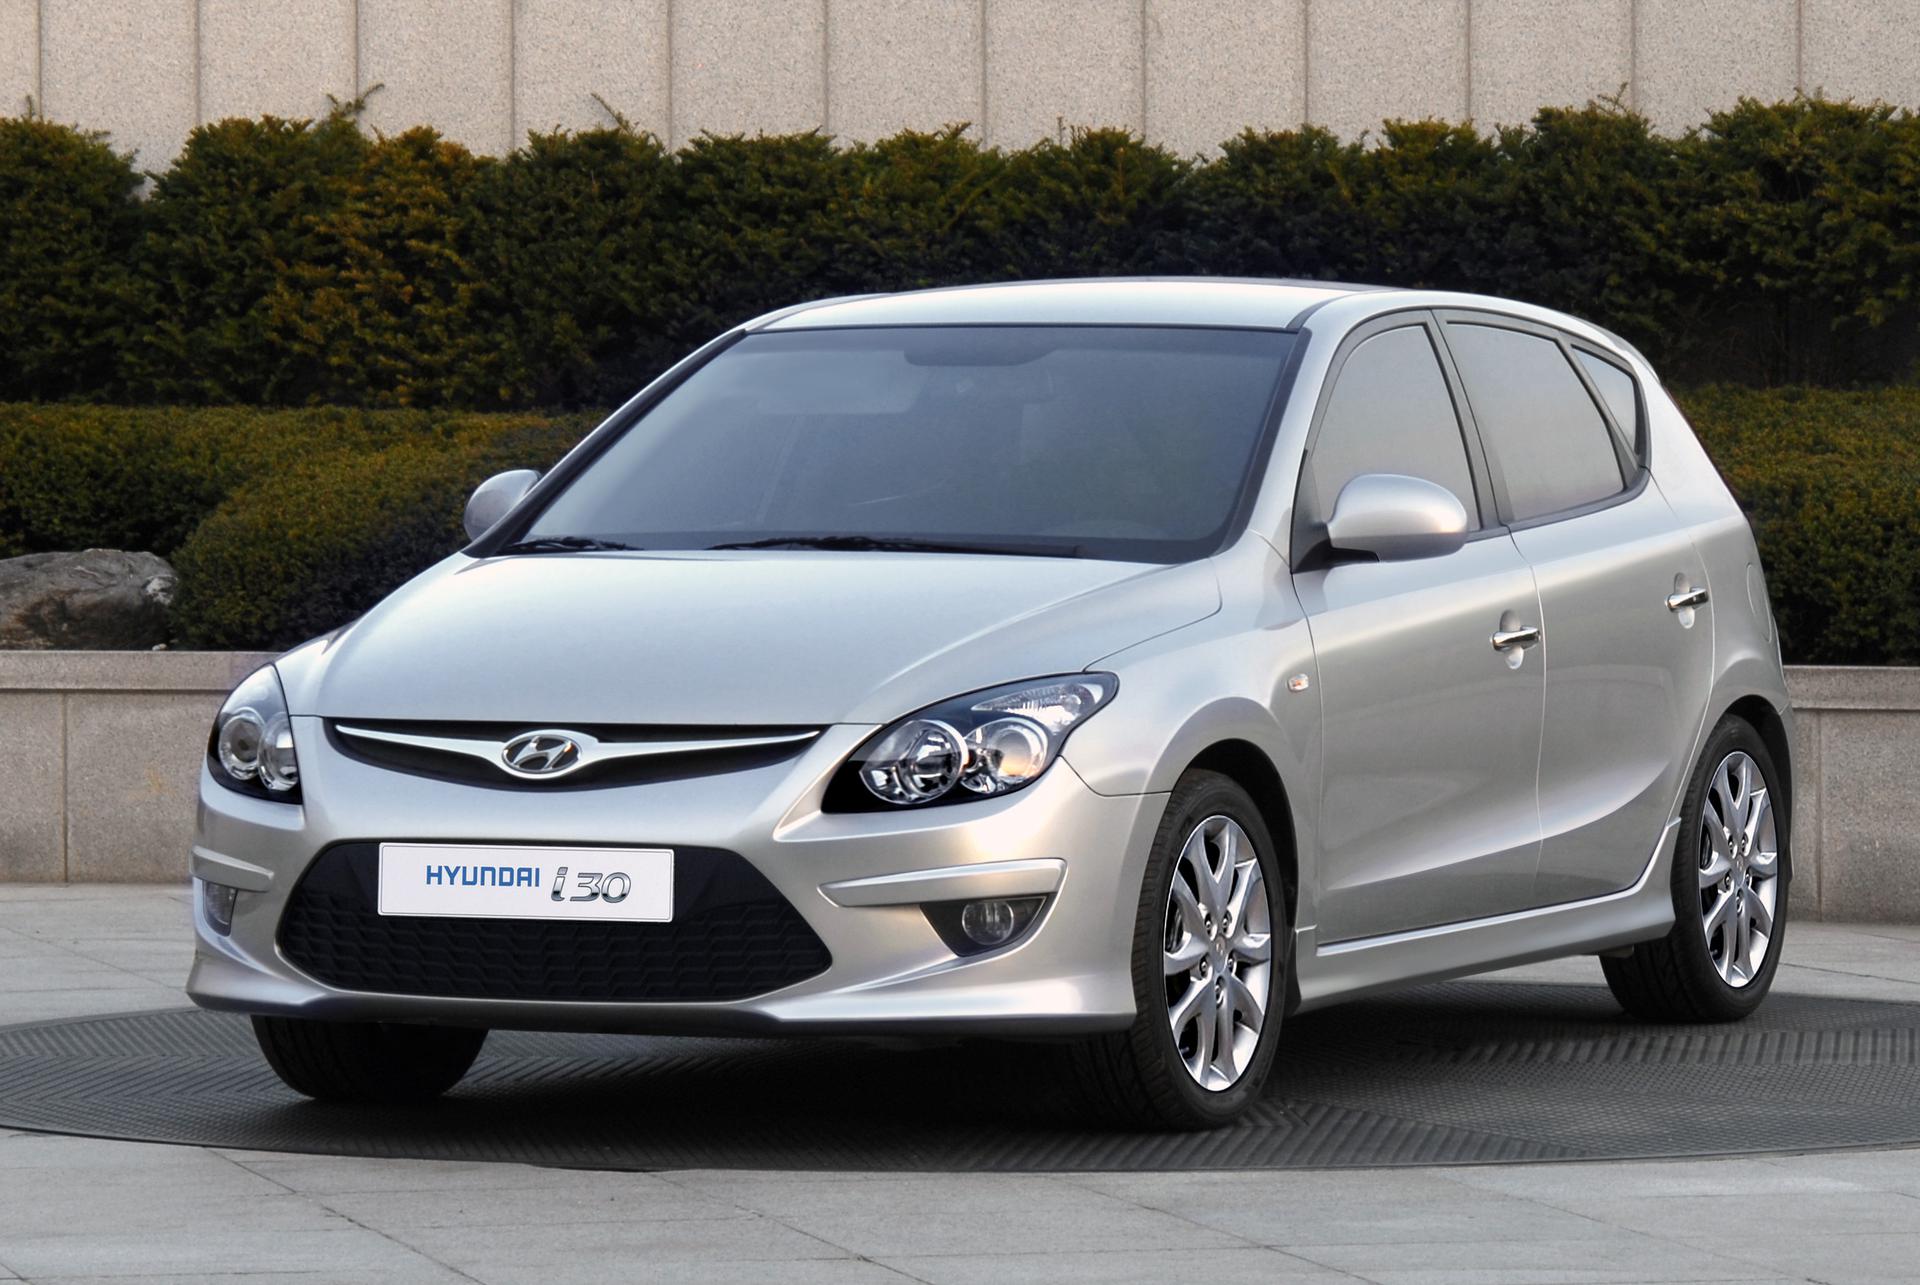 Hyundai i30 czy Kia Ceed? Porównanie bliźniaczych